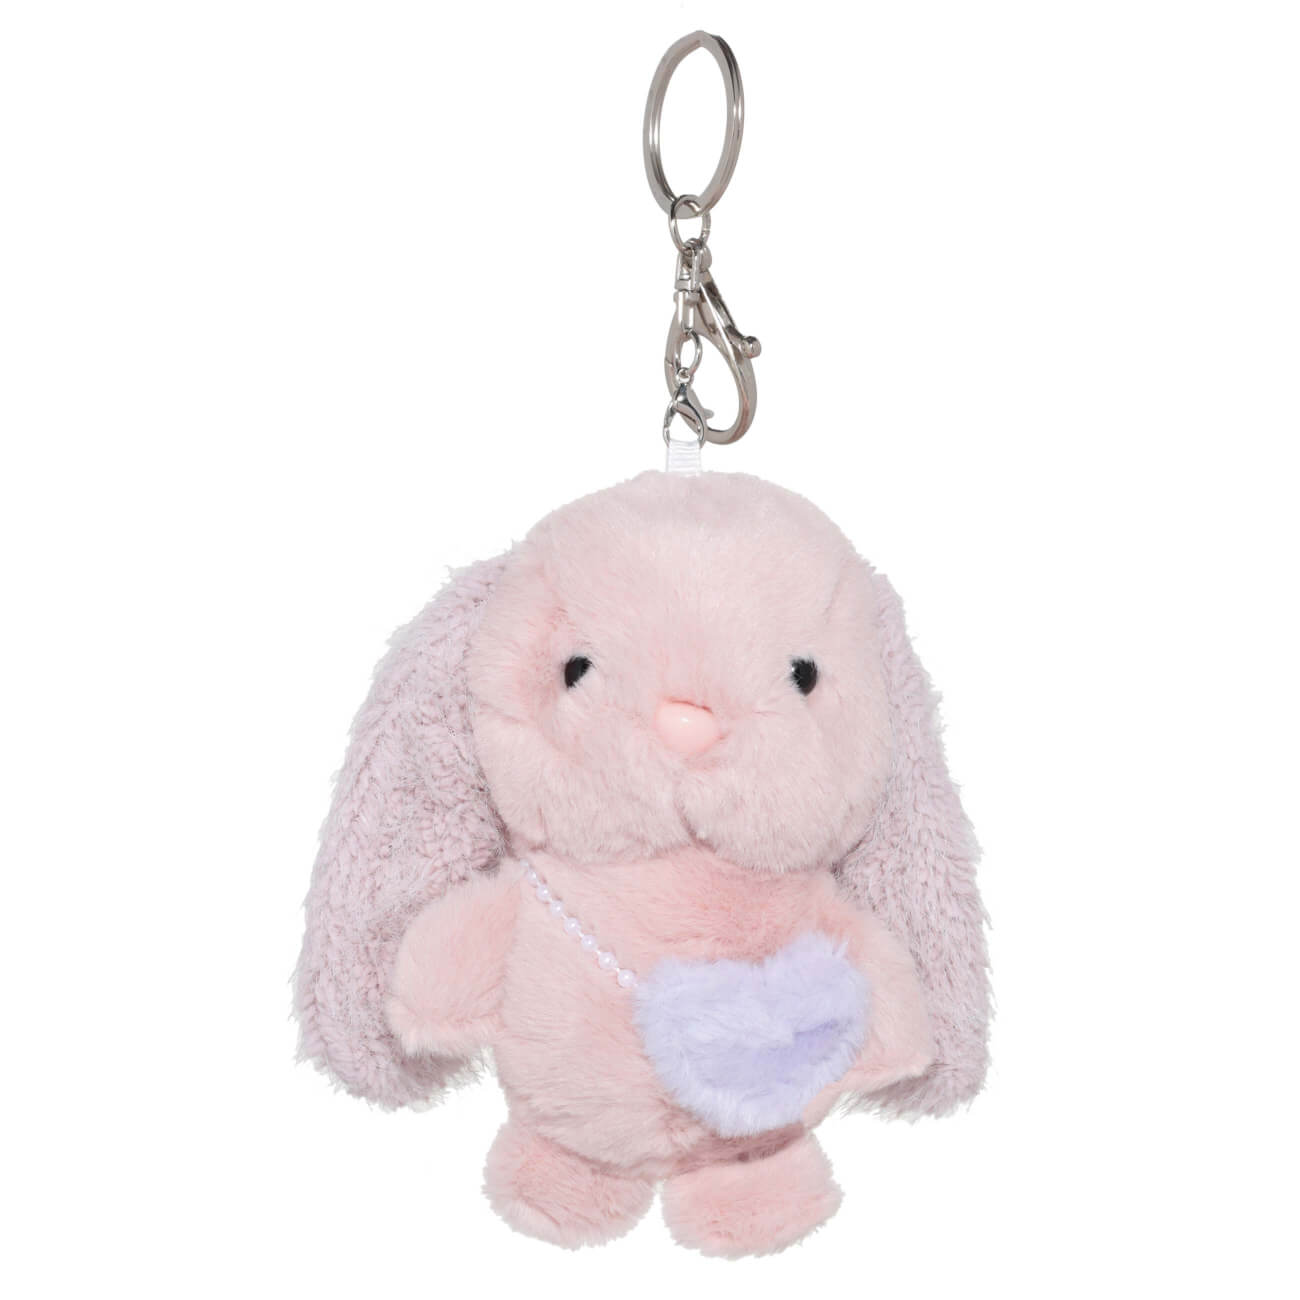 Брелок, 11 см, мягкий, полиэстер/металл, розово-фиолетовый, Зайка с сумочкой, Rabbit игрушка 30 см мягкая полиэстер синтепон серая зайка в платье rabbit